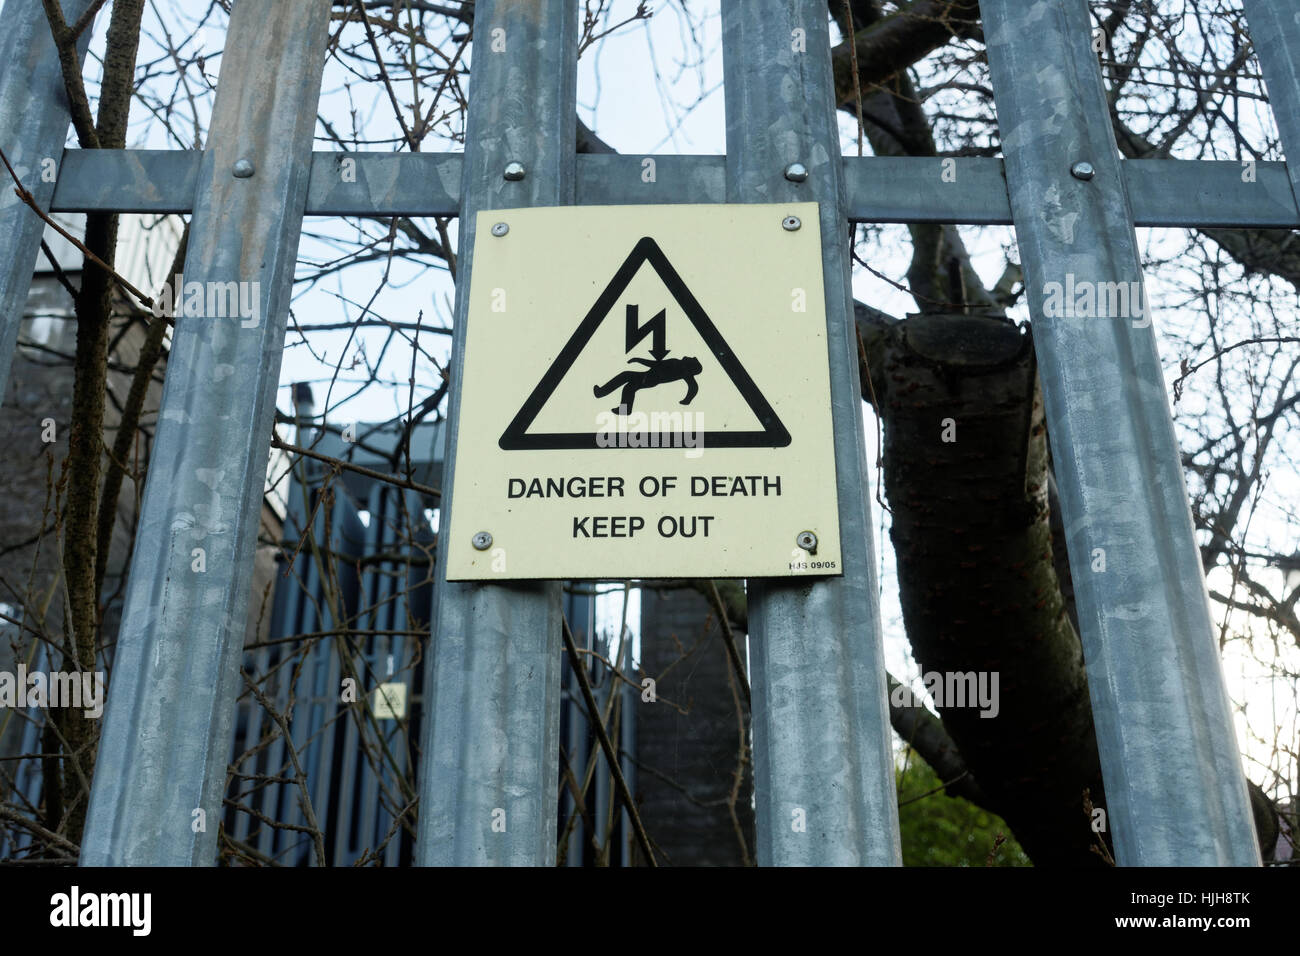 Garder hors de danger de mort signe de l'électricité et de clôture Banque D'Images